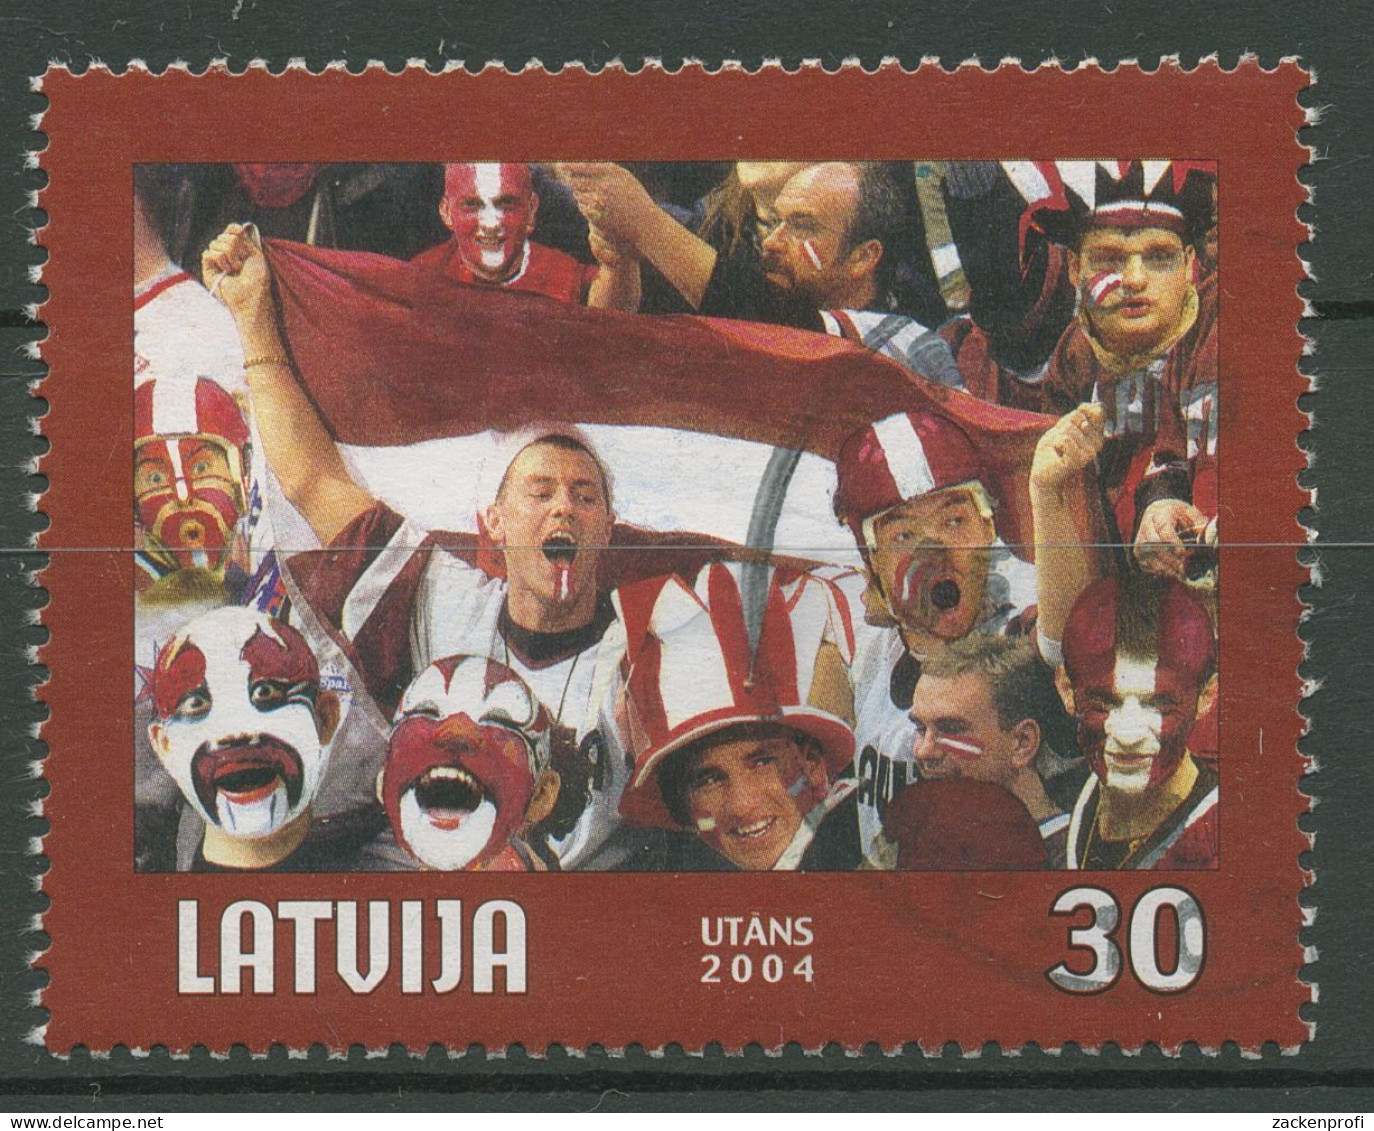 Lettland 2004 Eishockey-WM Riga 610 A Gestempelt - Lettonie